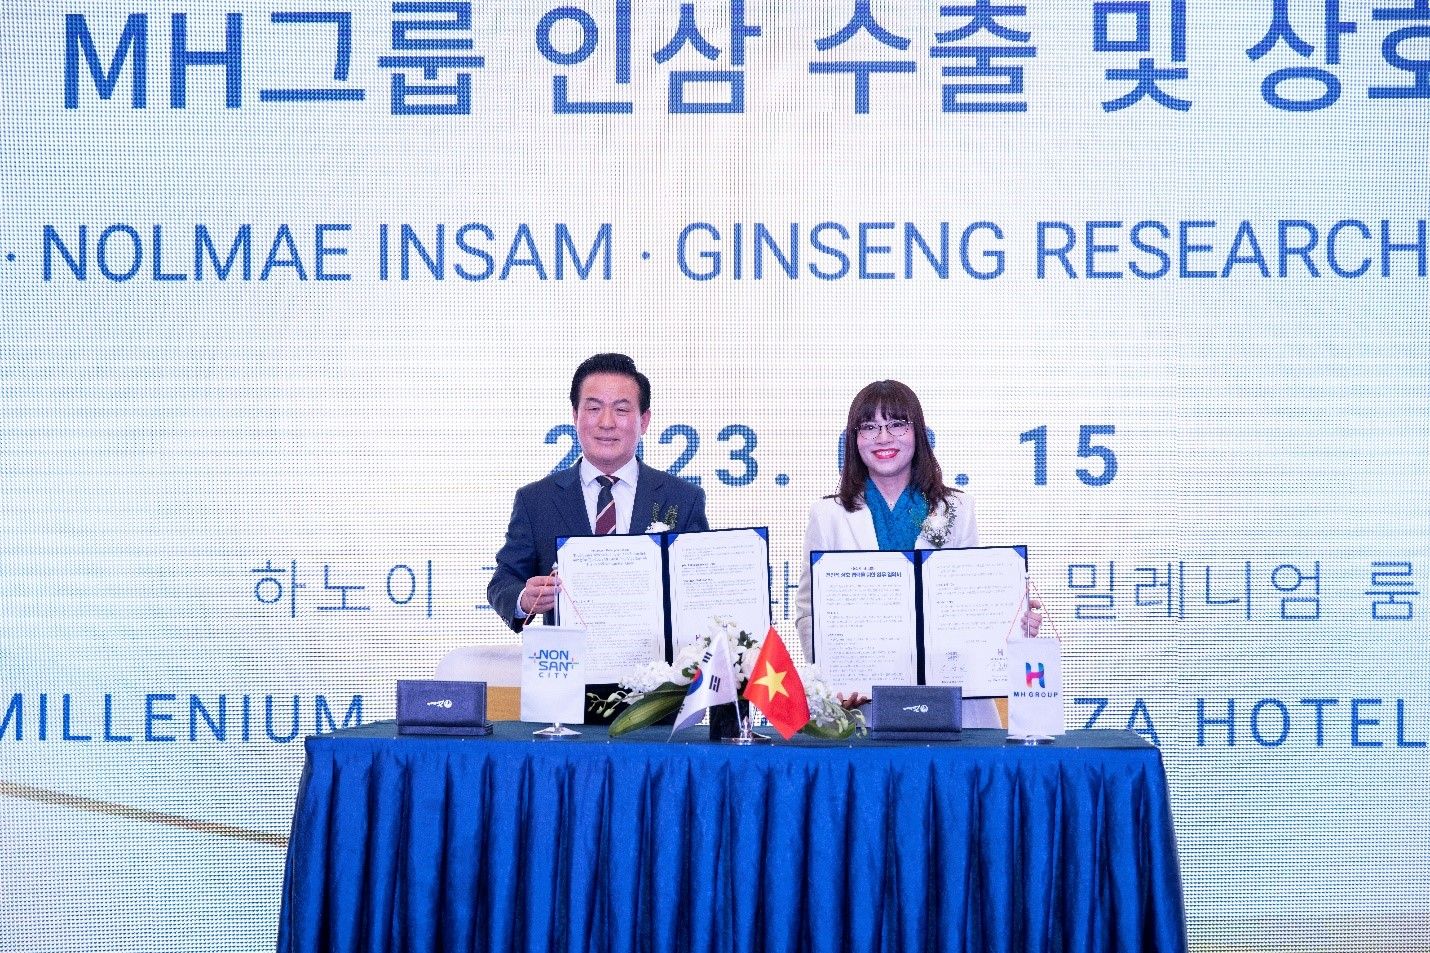 Thành phố Nonsan (Hàn Quốc) và Tập đoàn MHGroup ký kết thỏa thuận hợp tác chiến lược toàn diện